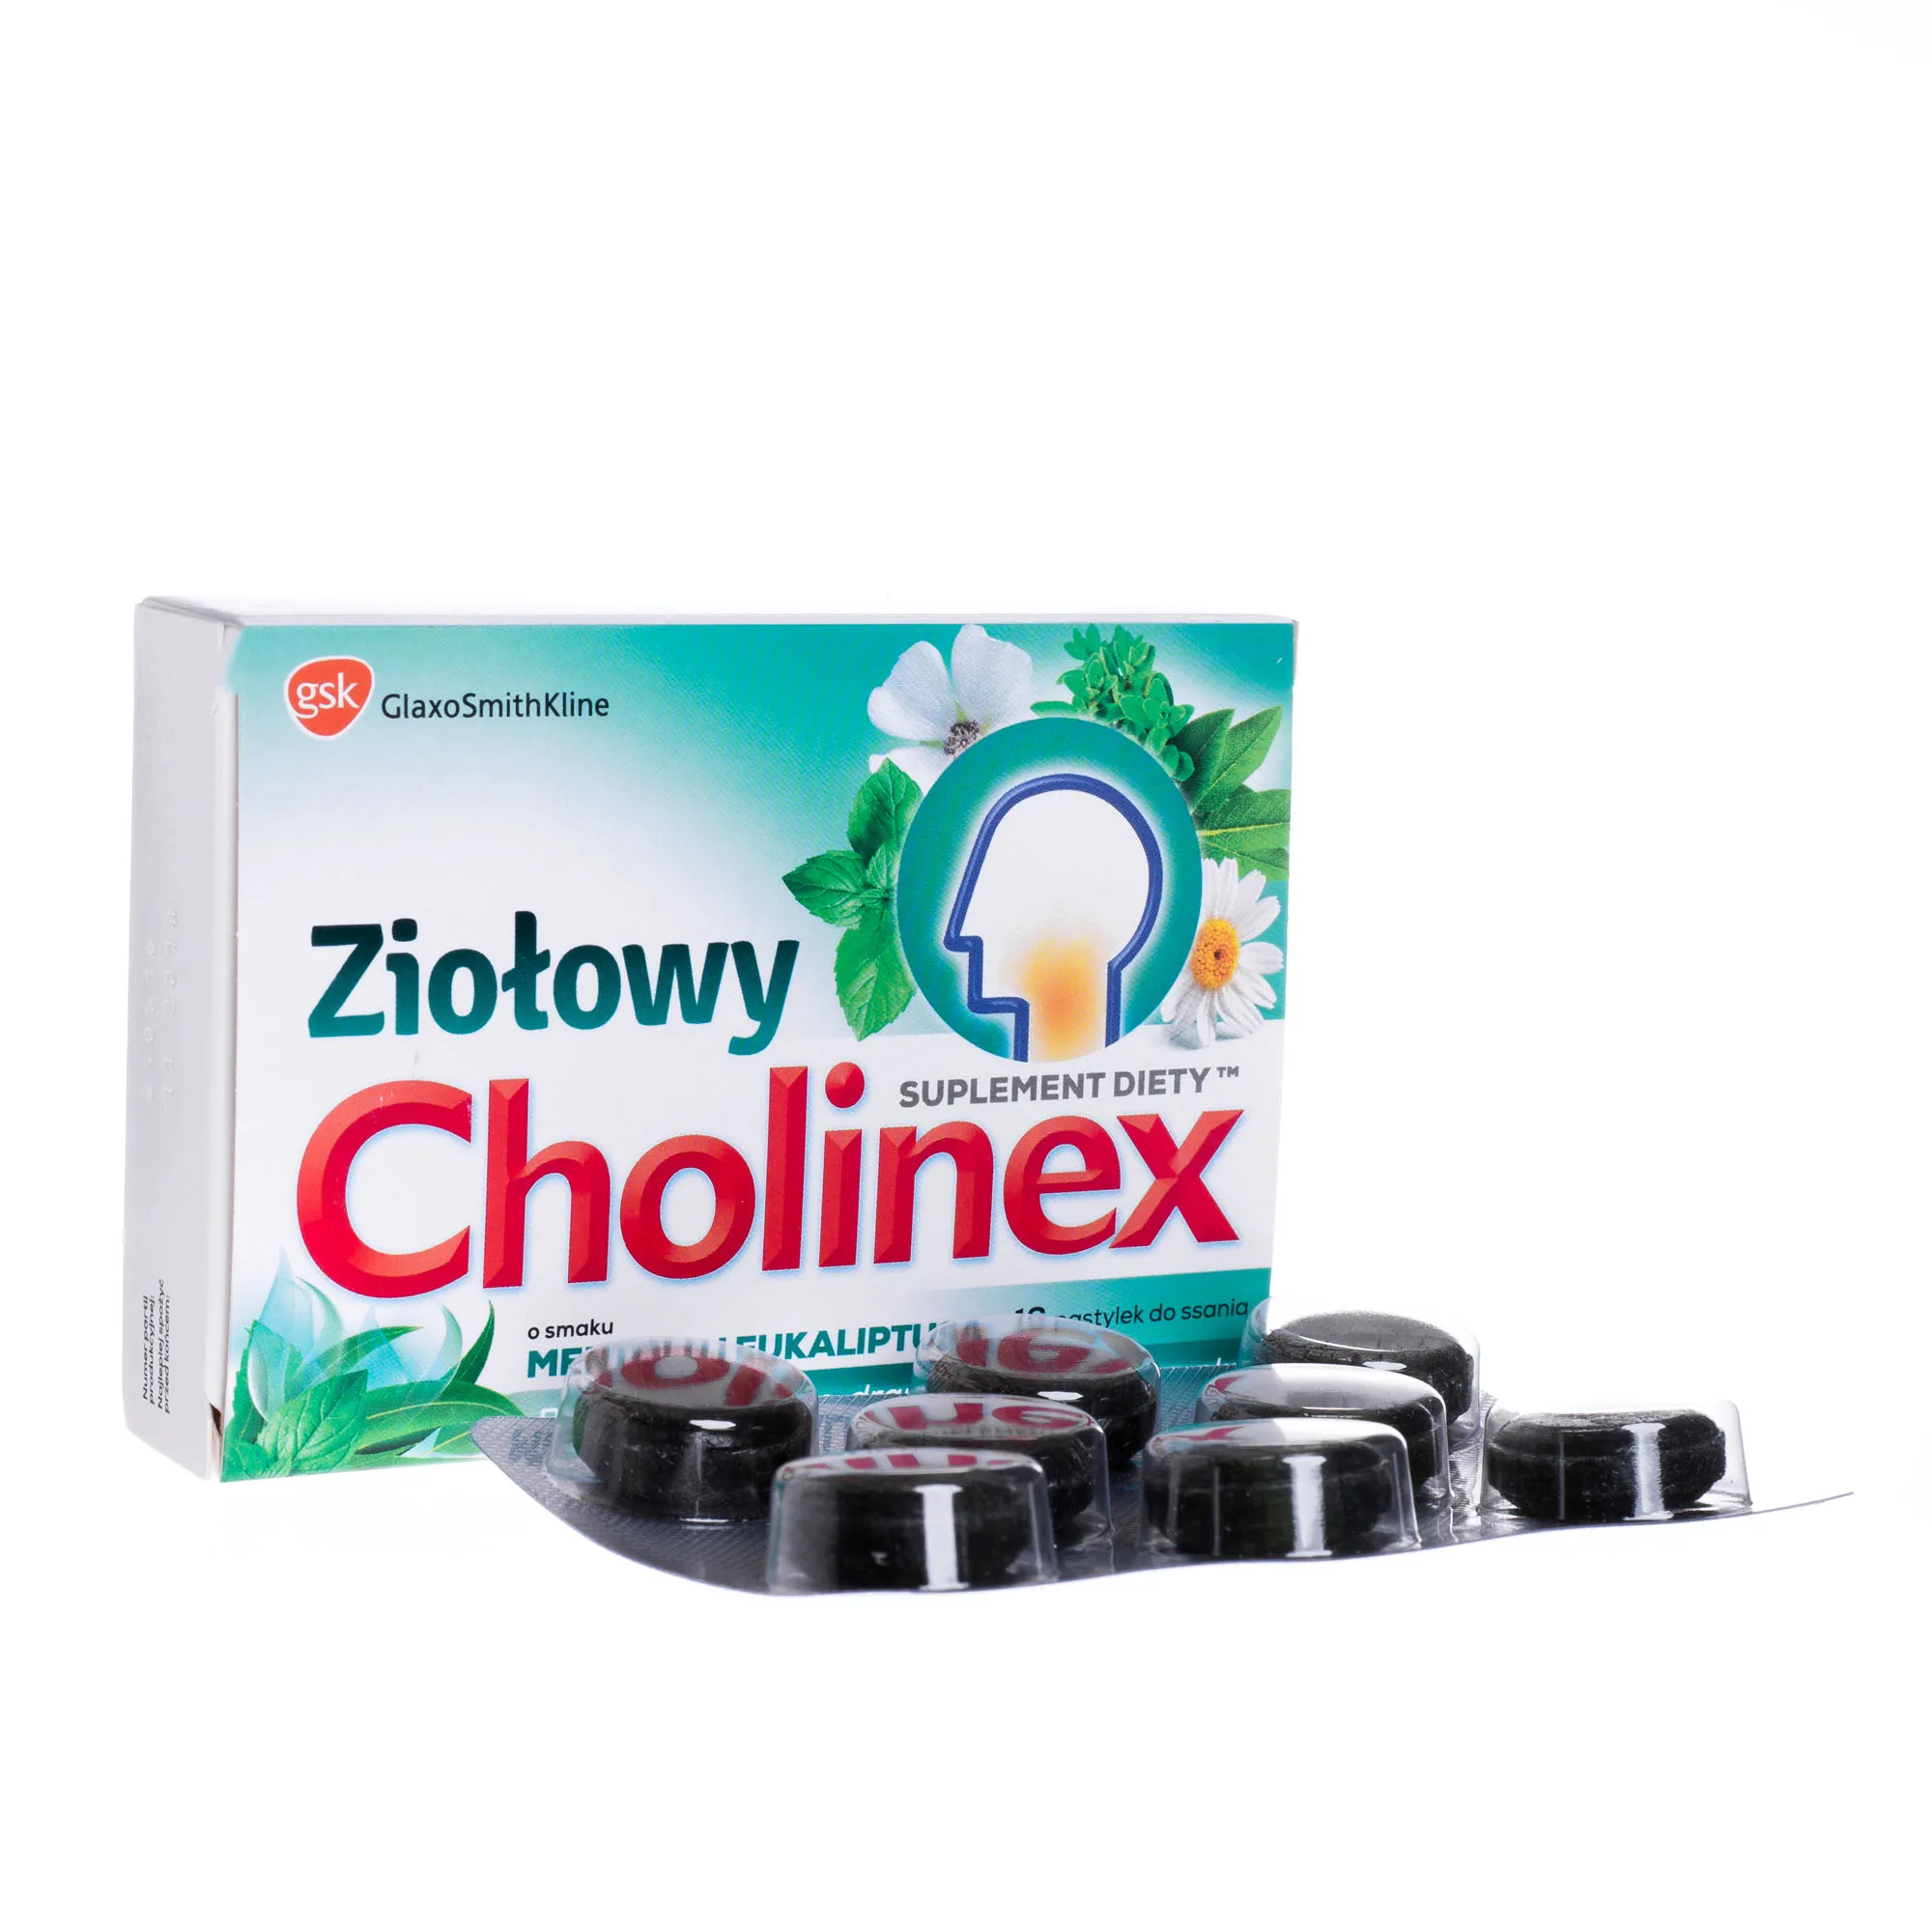 Ziołowy Cholinex, suplement diety, o smaku mentolu i eukaliptusa, 16 pastylek do ssania